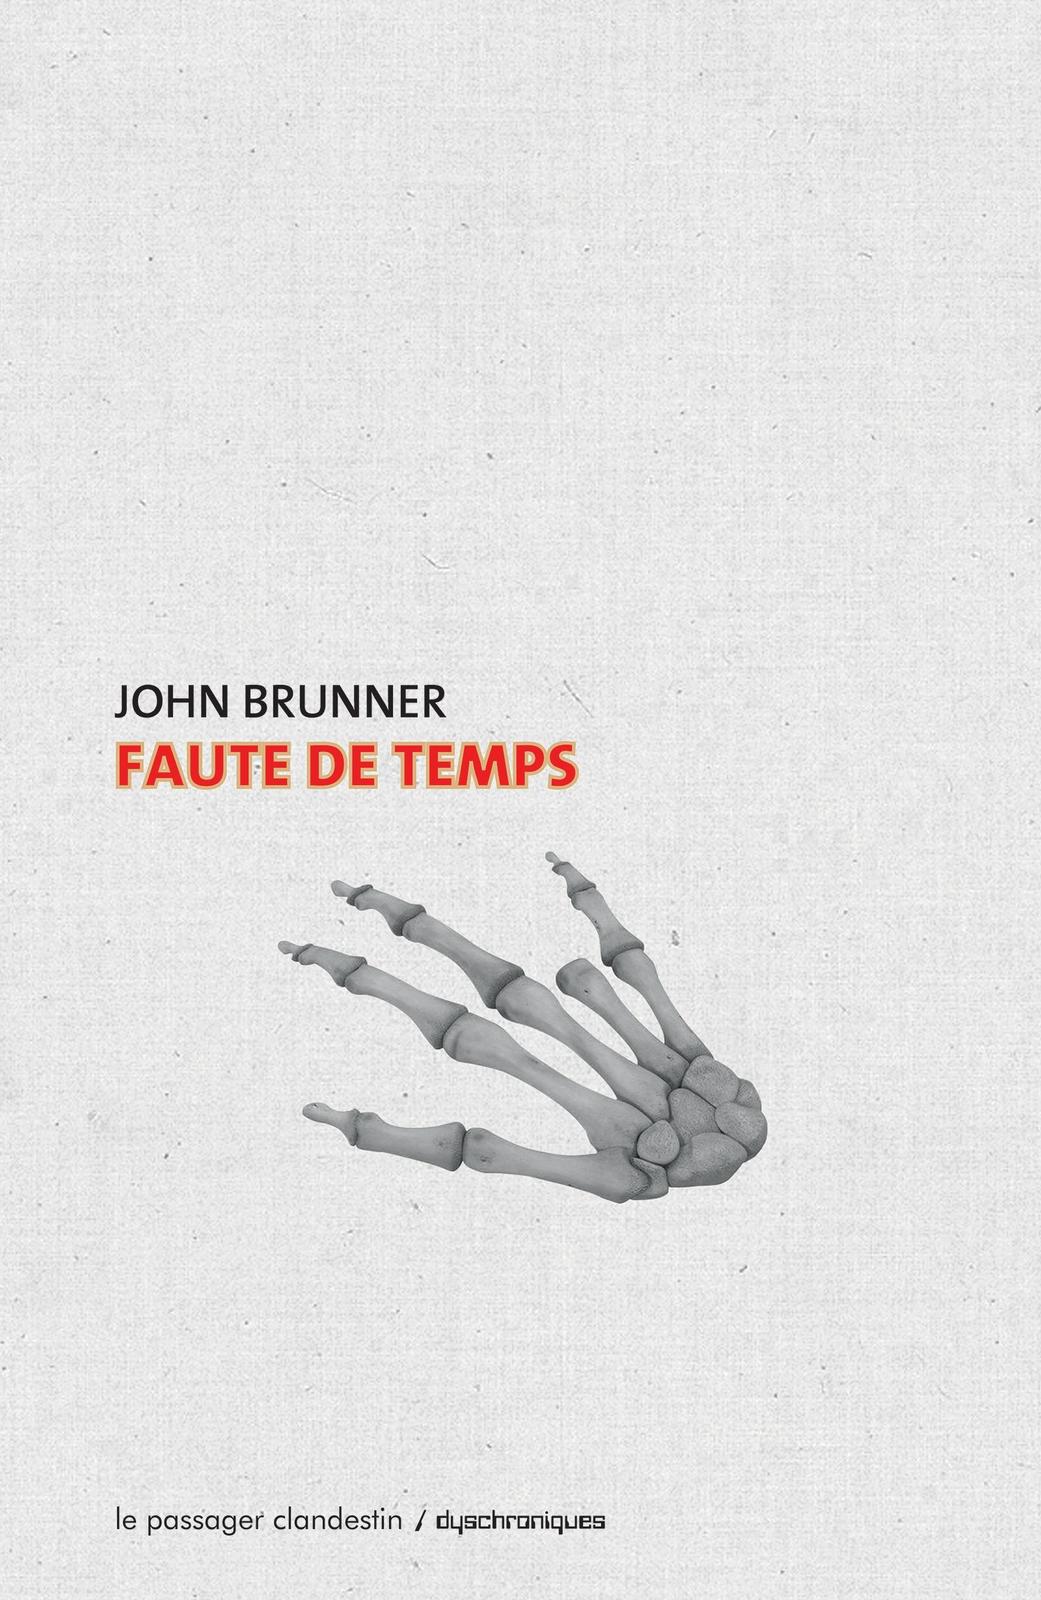 John Brunner: Faute de temps (French language, 2015, Le passager clandestin)